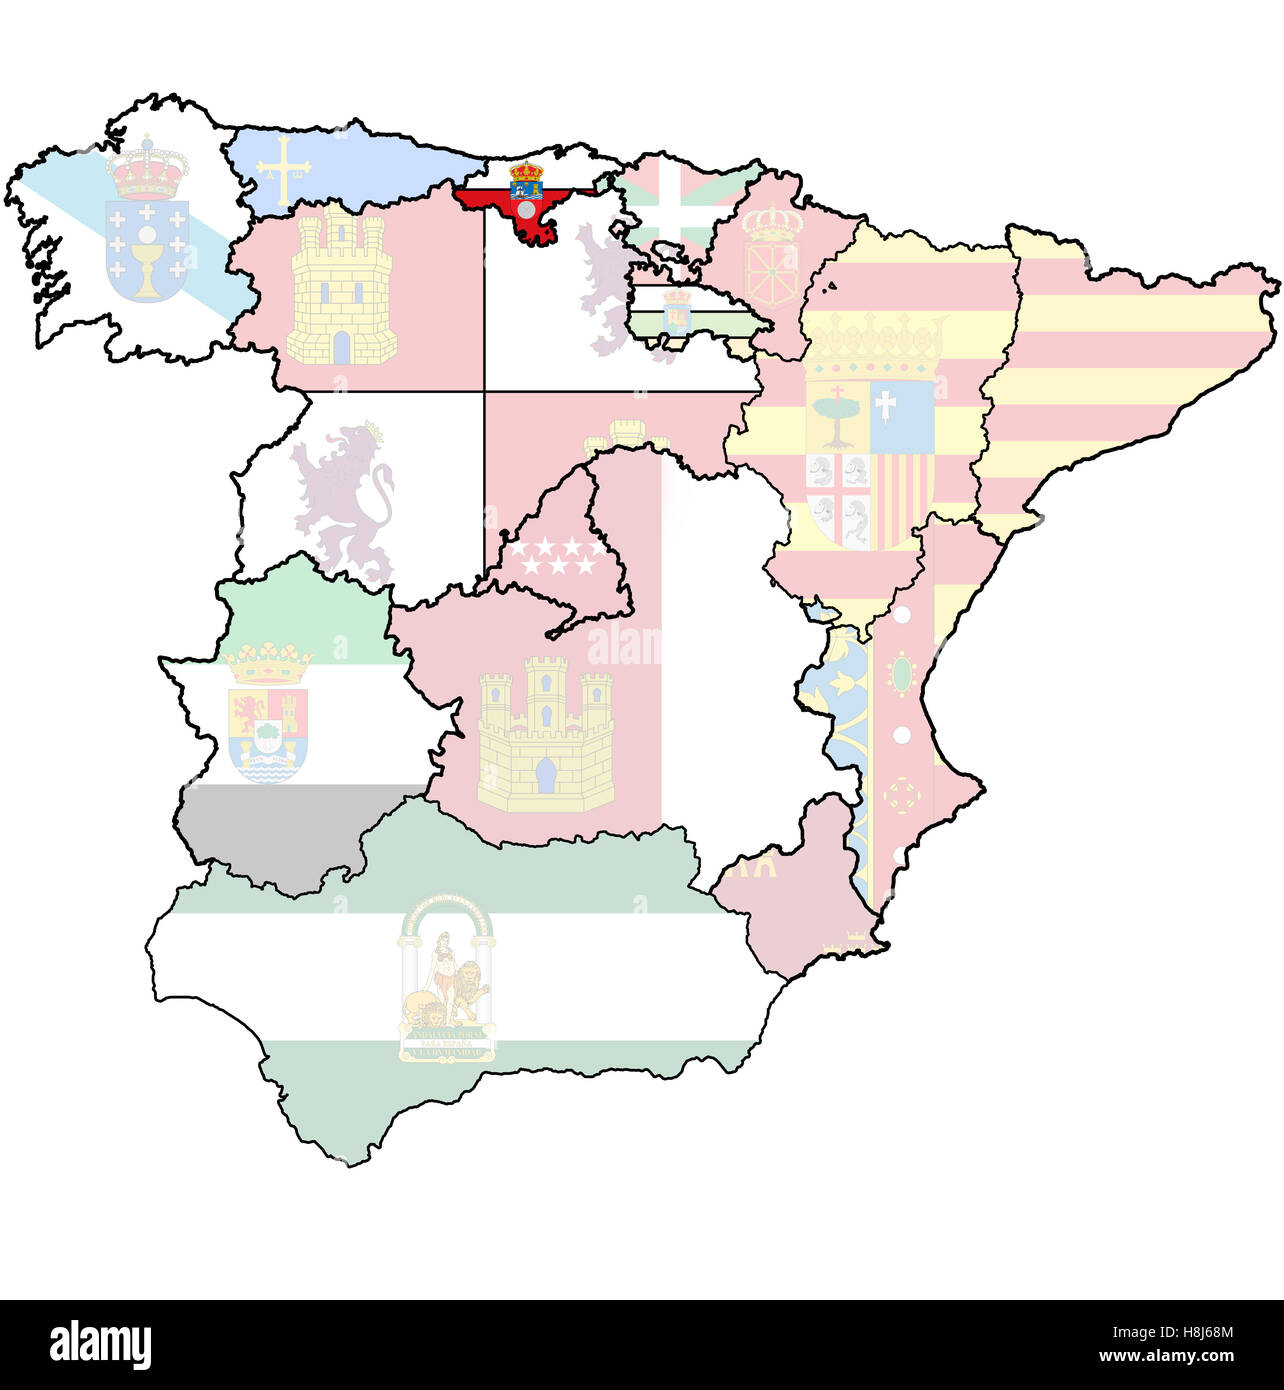 Cantabria région sur le site de l'administration des régions d'Espagne avec des drapeaux et emblèmes Banque D'Images